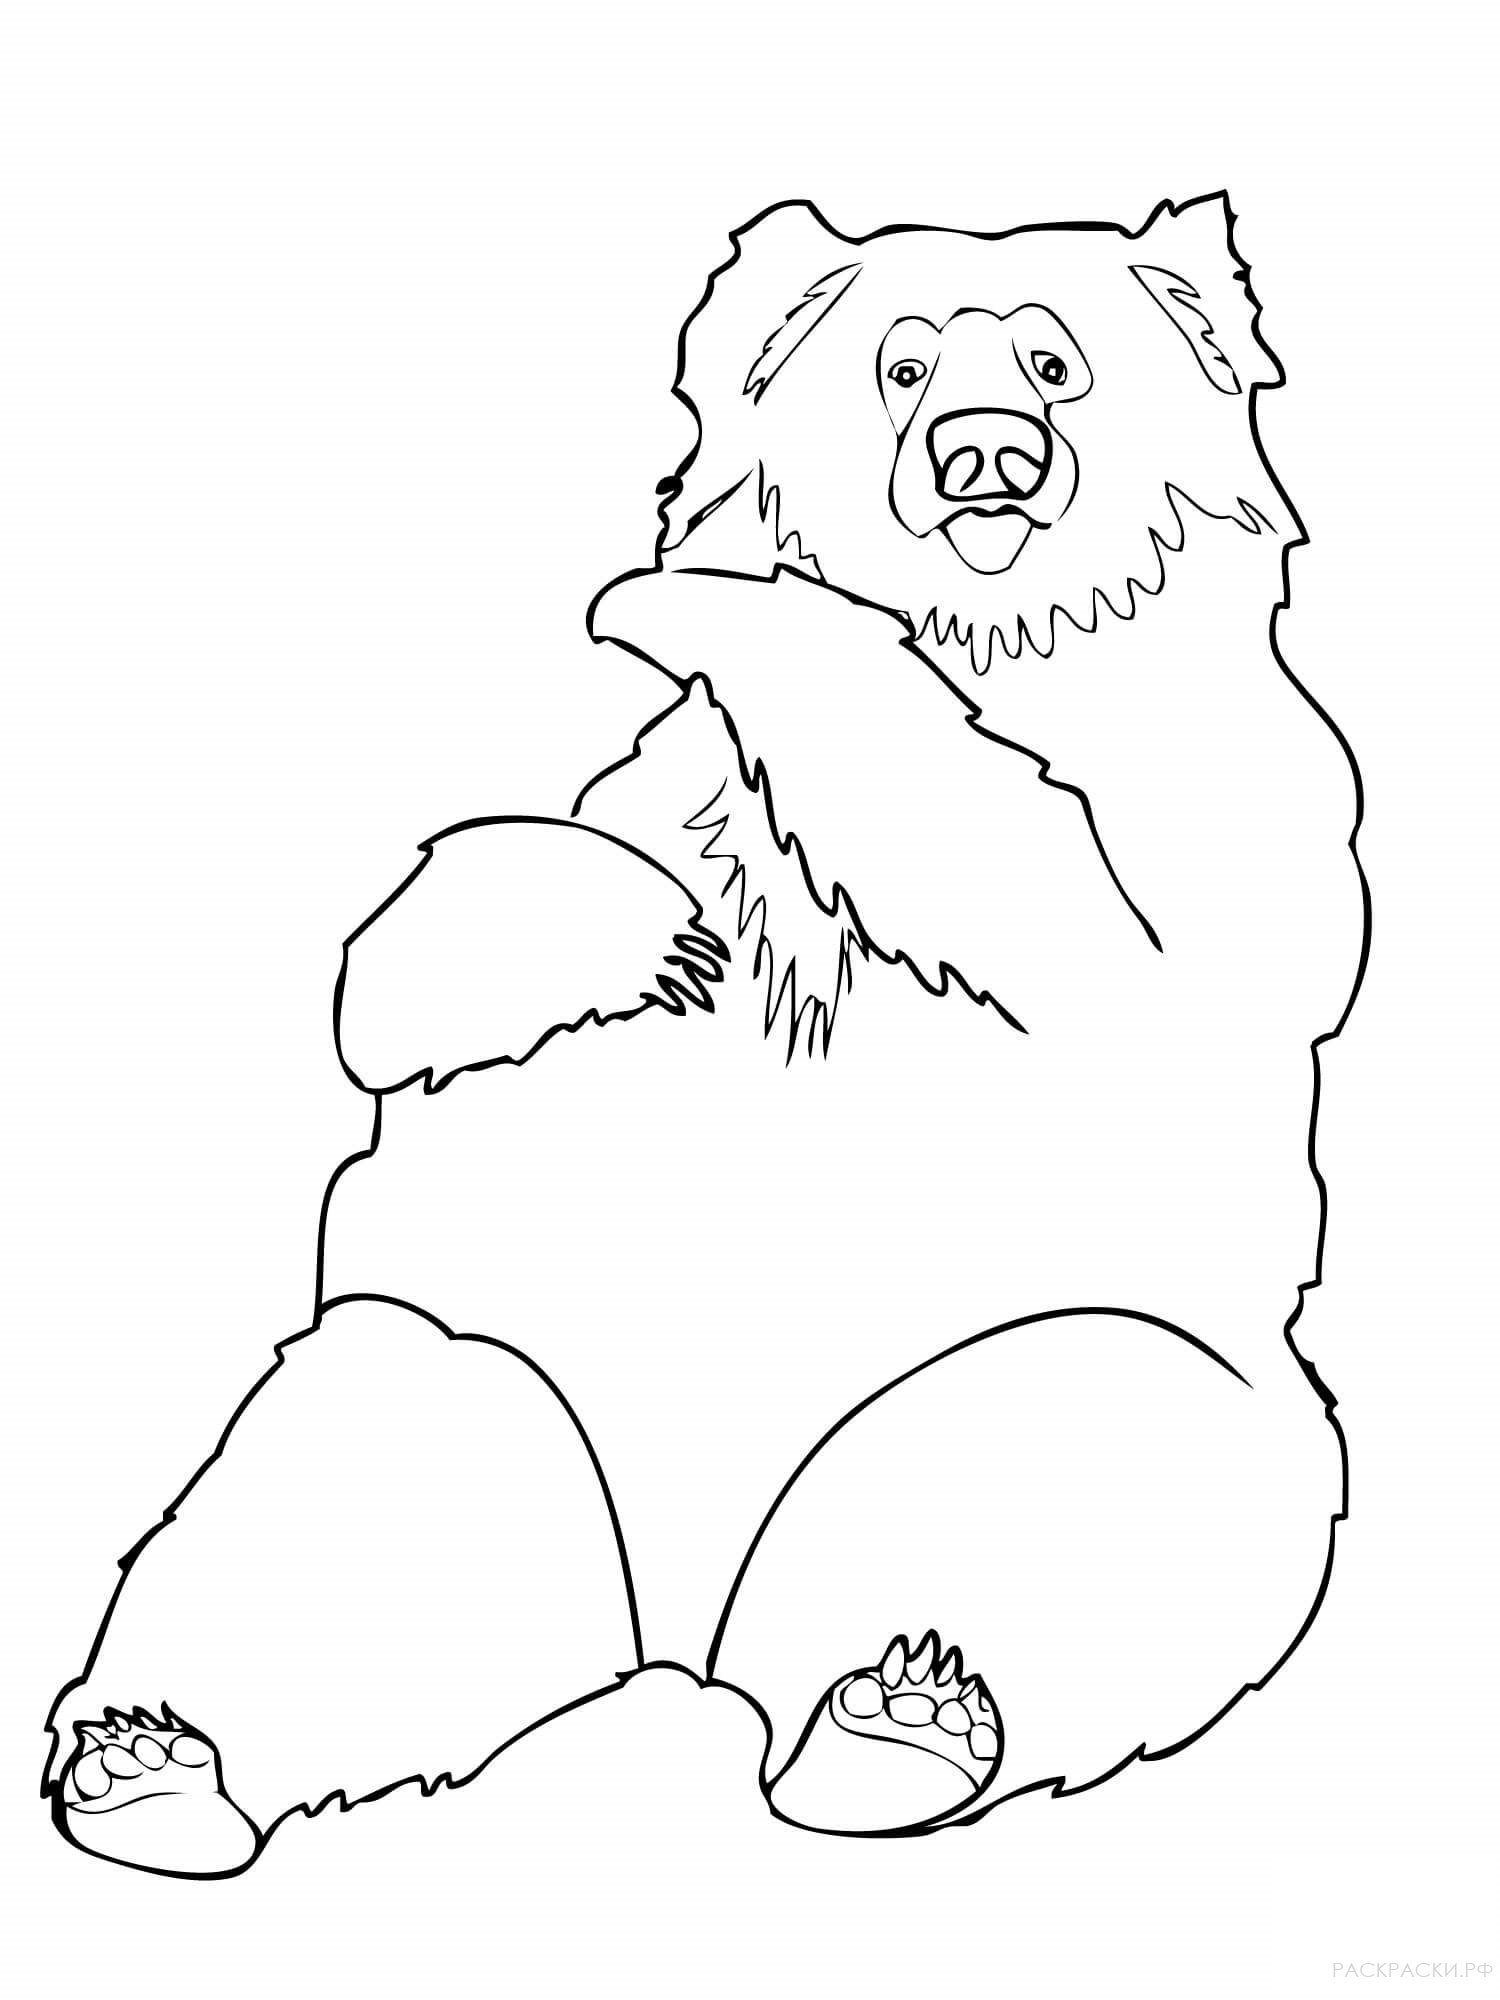 Распечатка медведя. Медведь раскраска. Медведь раскраска для детей. Гималайский медведь раскраска. Медведь для раскрашивания детям.